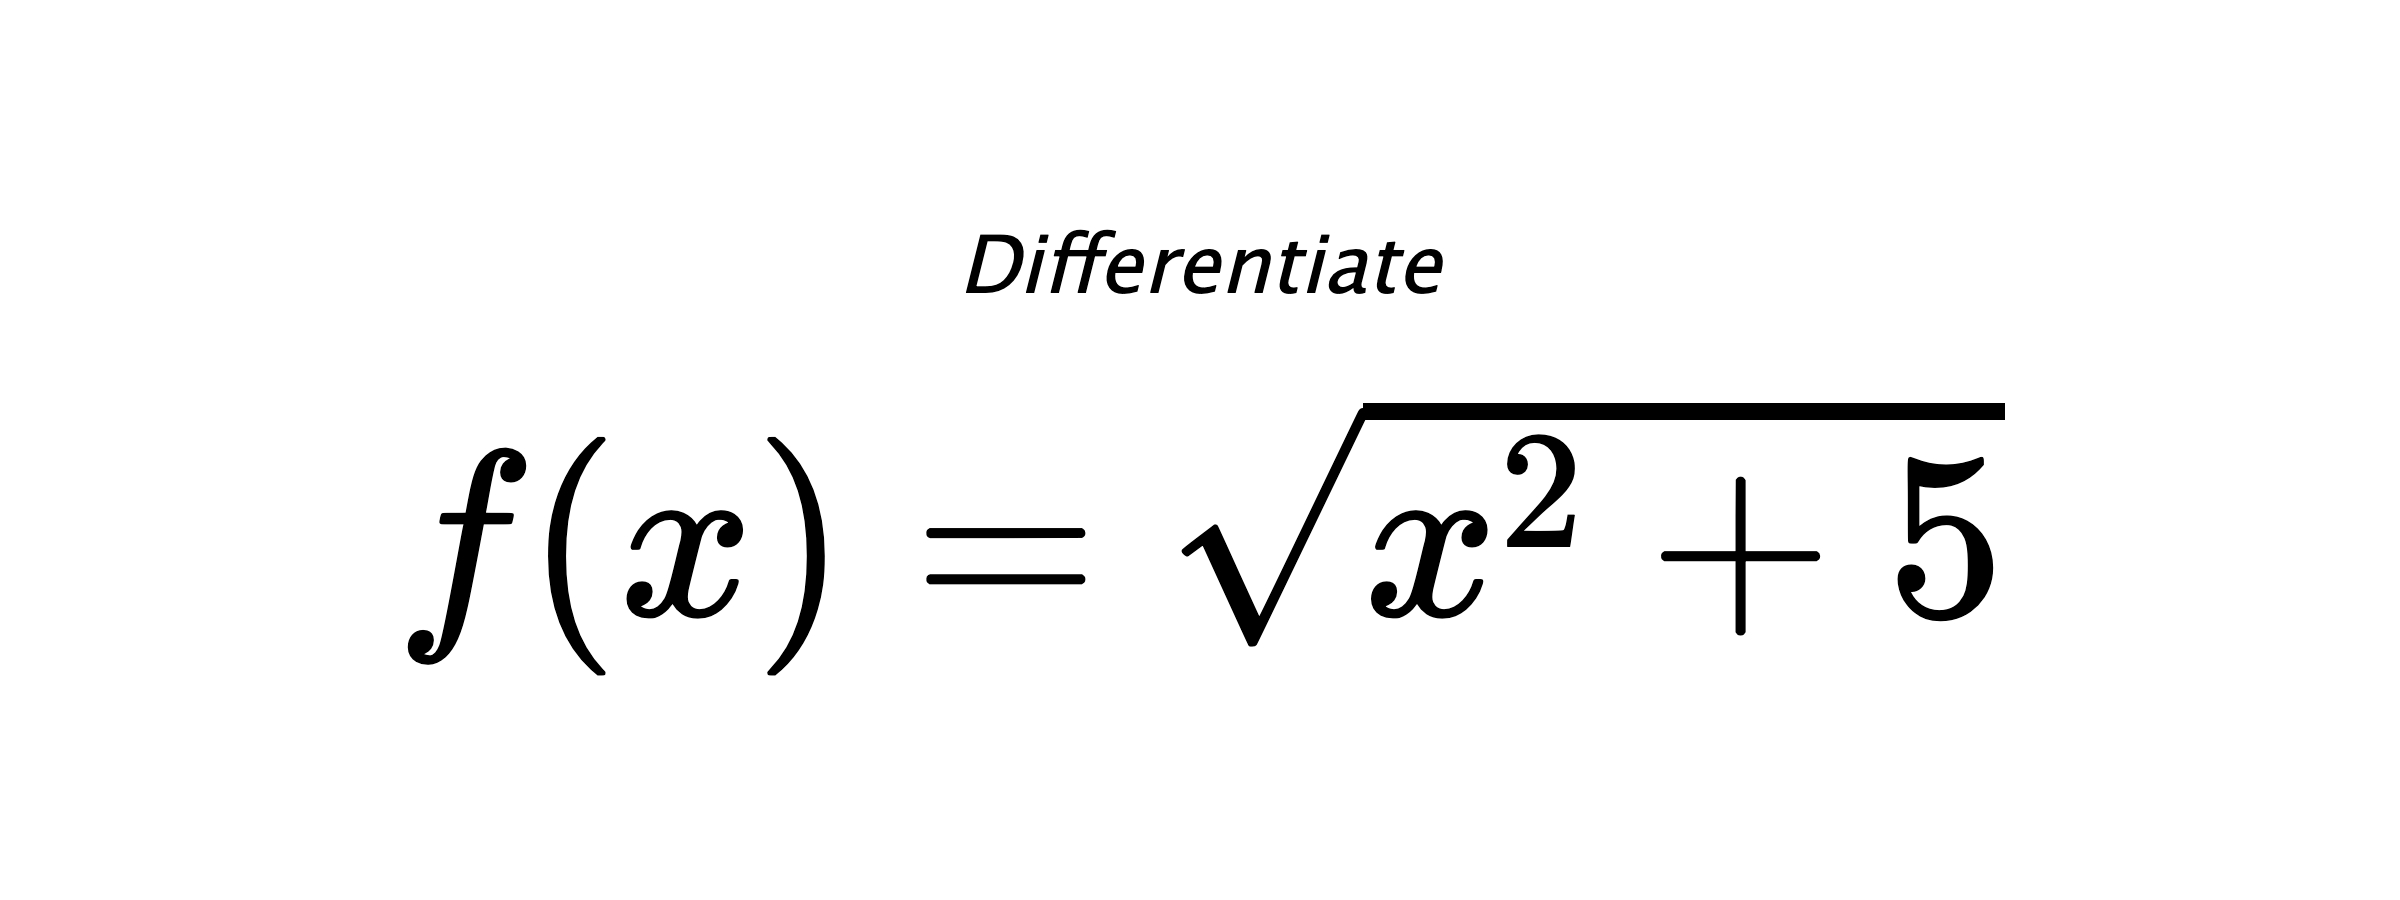 Differentiate $ f(x) = \sqrt{x^{2} + 5} $